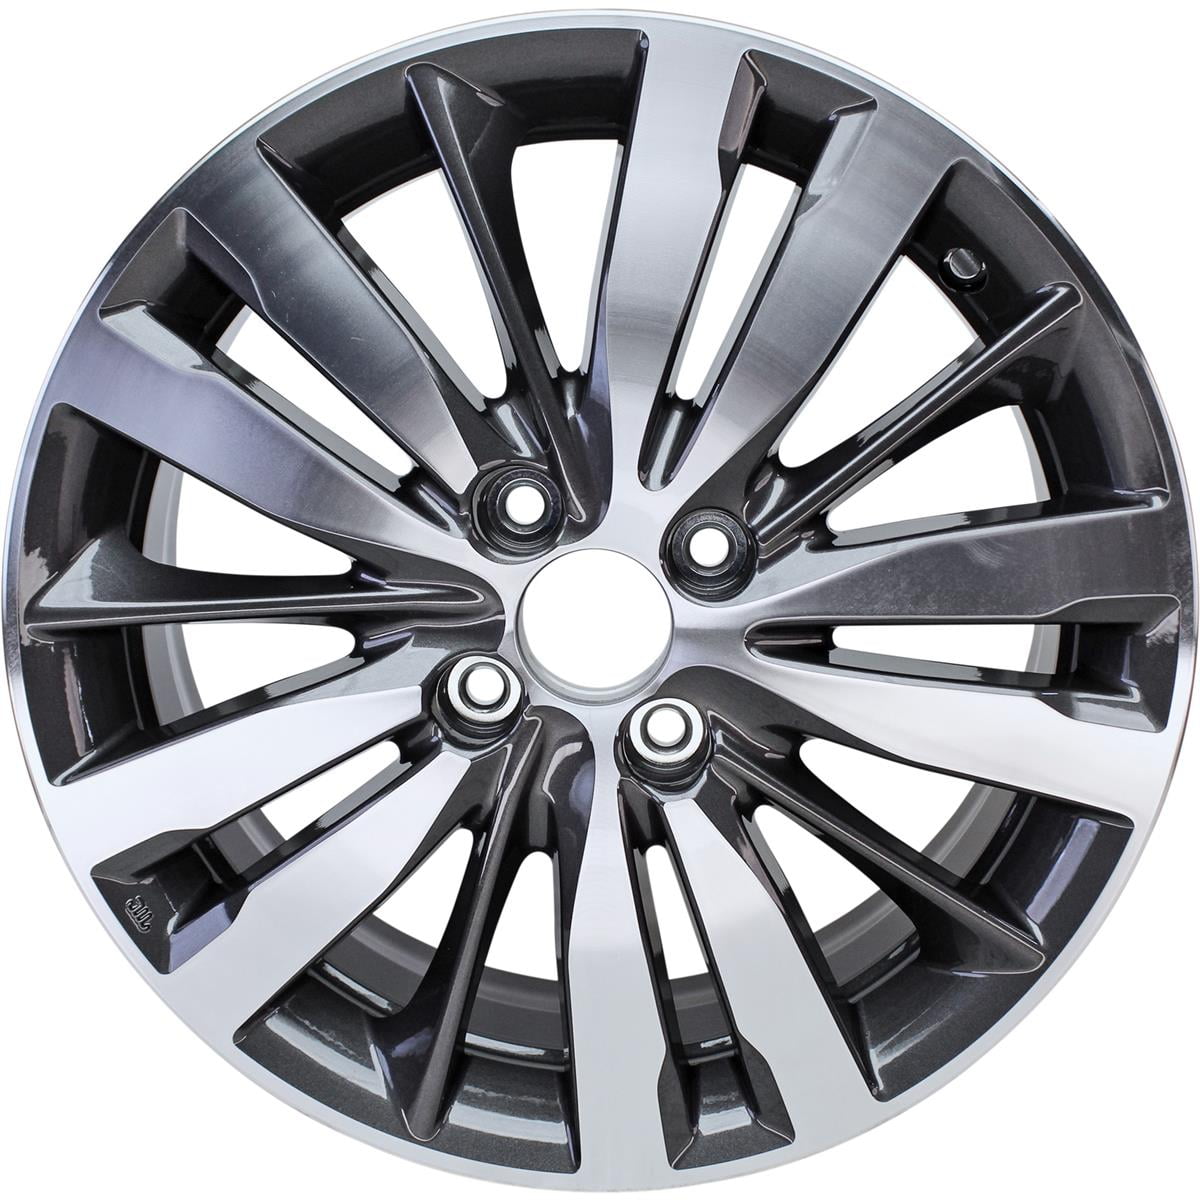 20 Inch Black Rims For A Hyundai Sonata